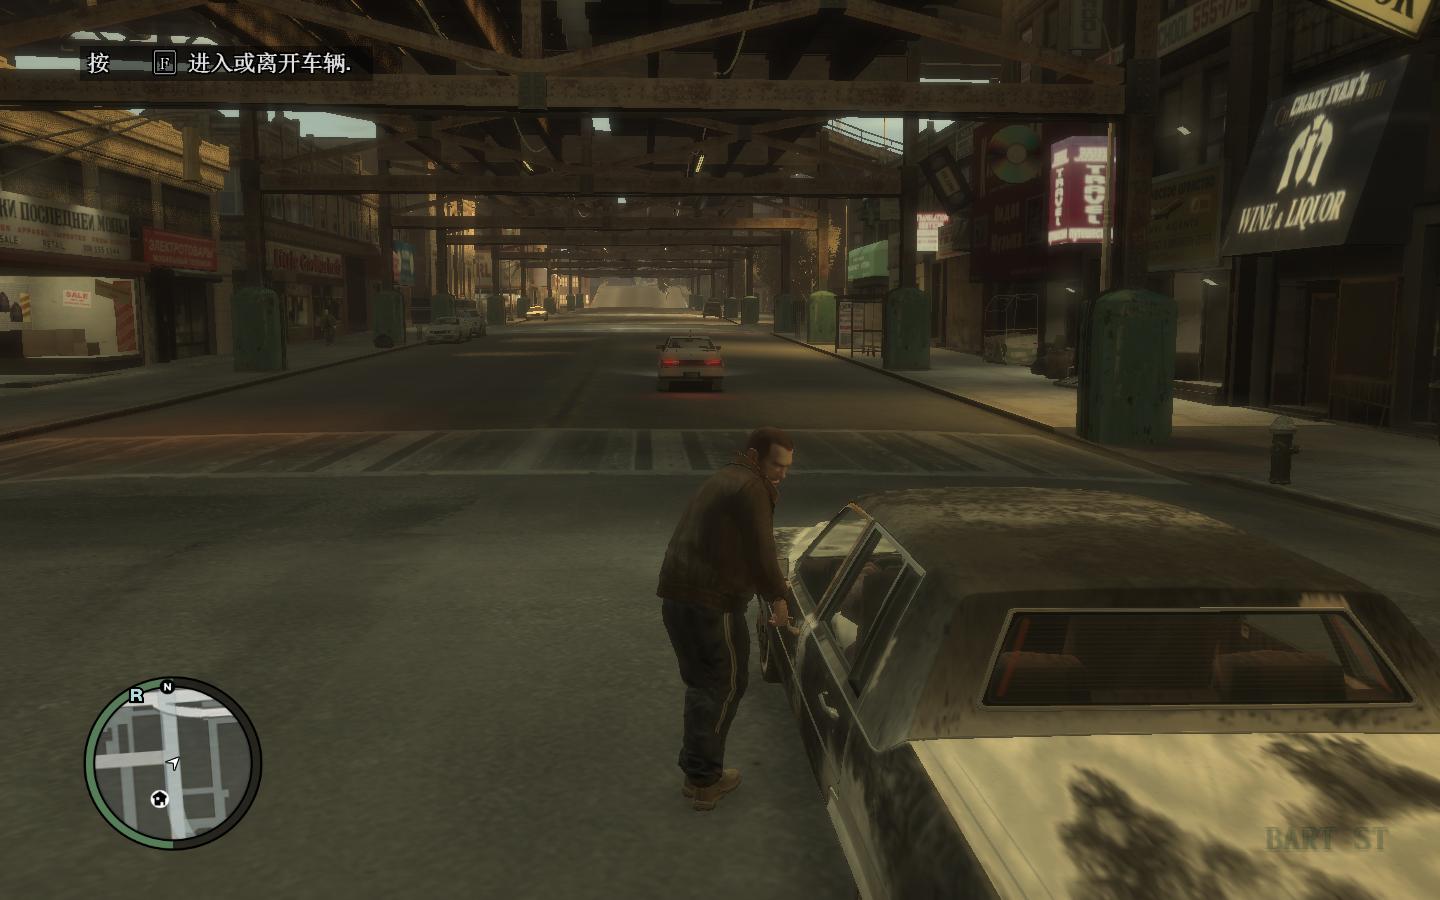 Գ4Grand Theft Auto IVENBǿMOD ICEnhancer 2.0